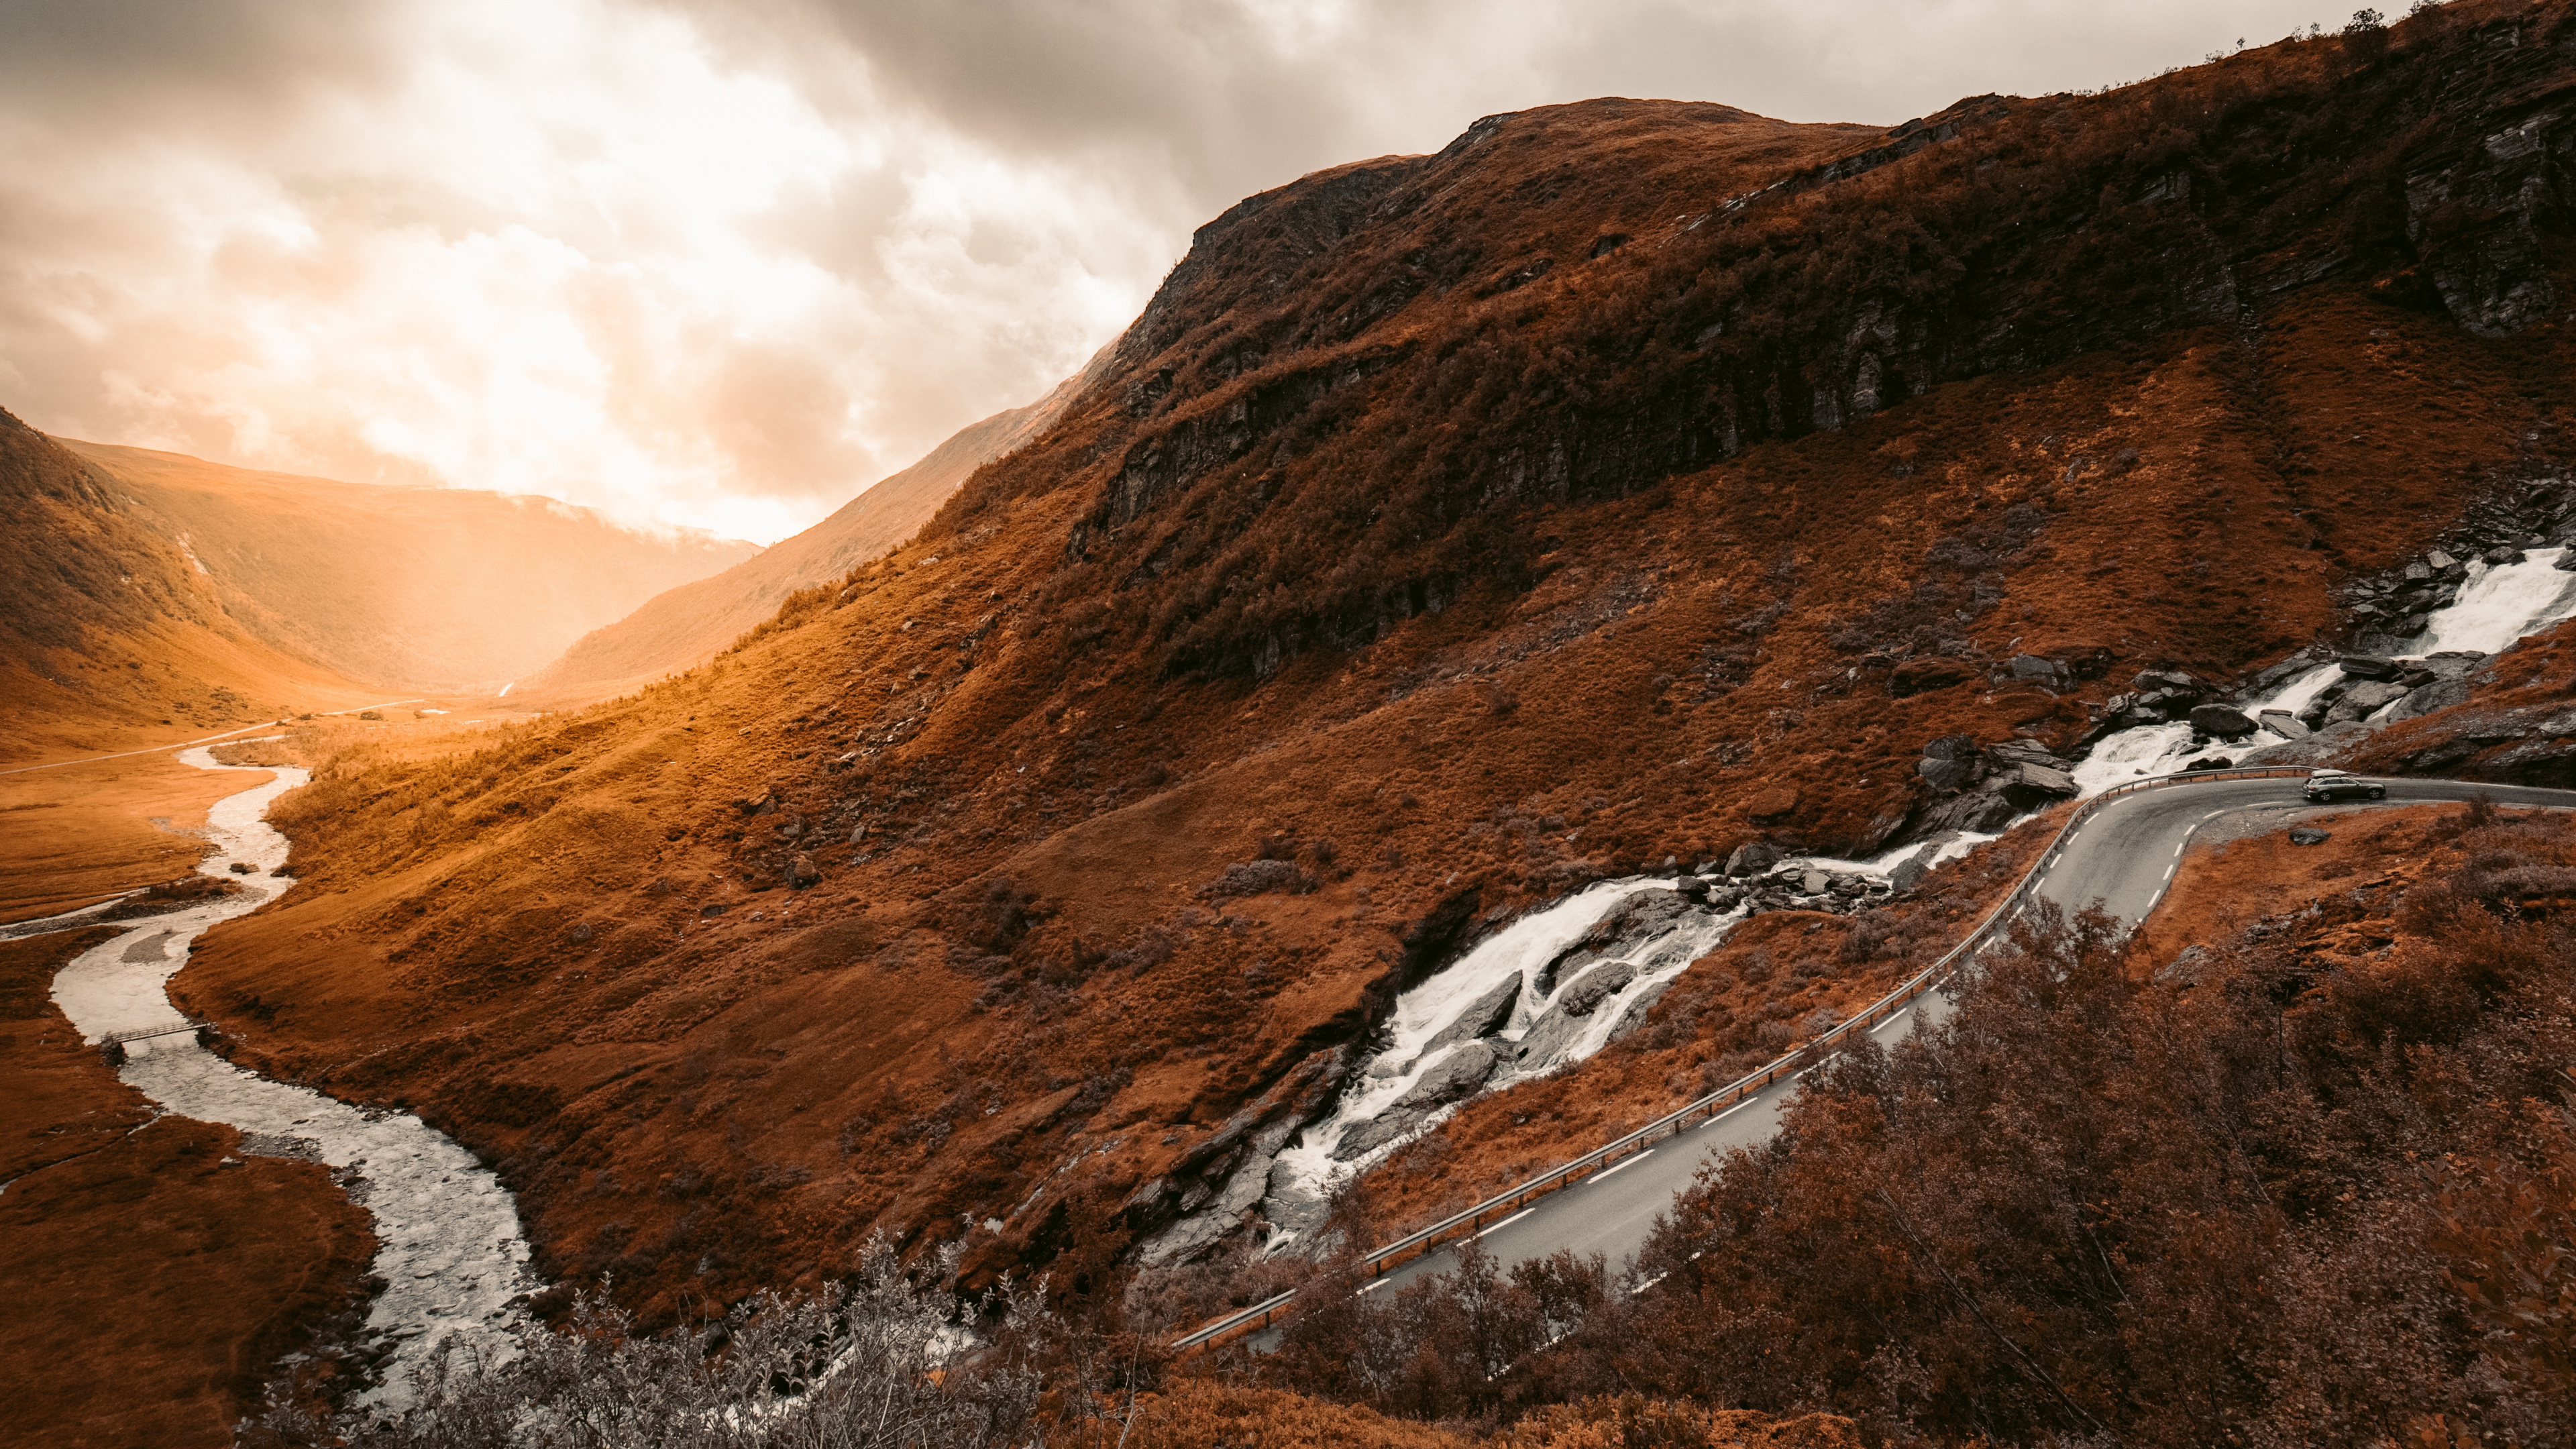 Las Formaciones Montañosas, Naturaleza, Highland, Montaña, Paisaje Natural. Wallpaper in 3840x2160 Resolution